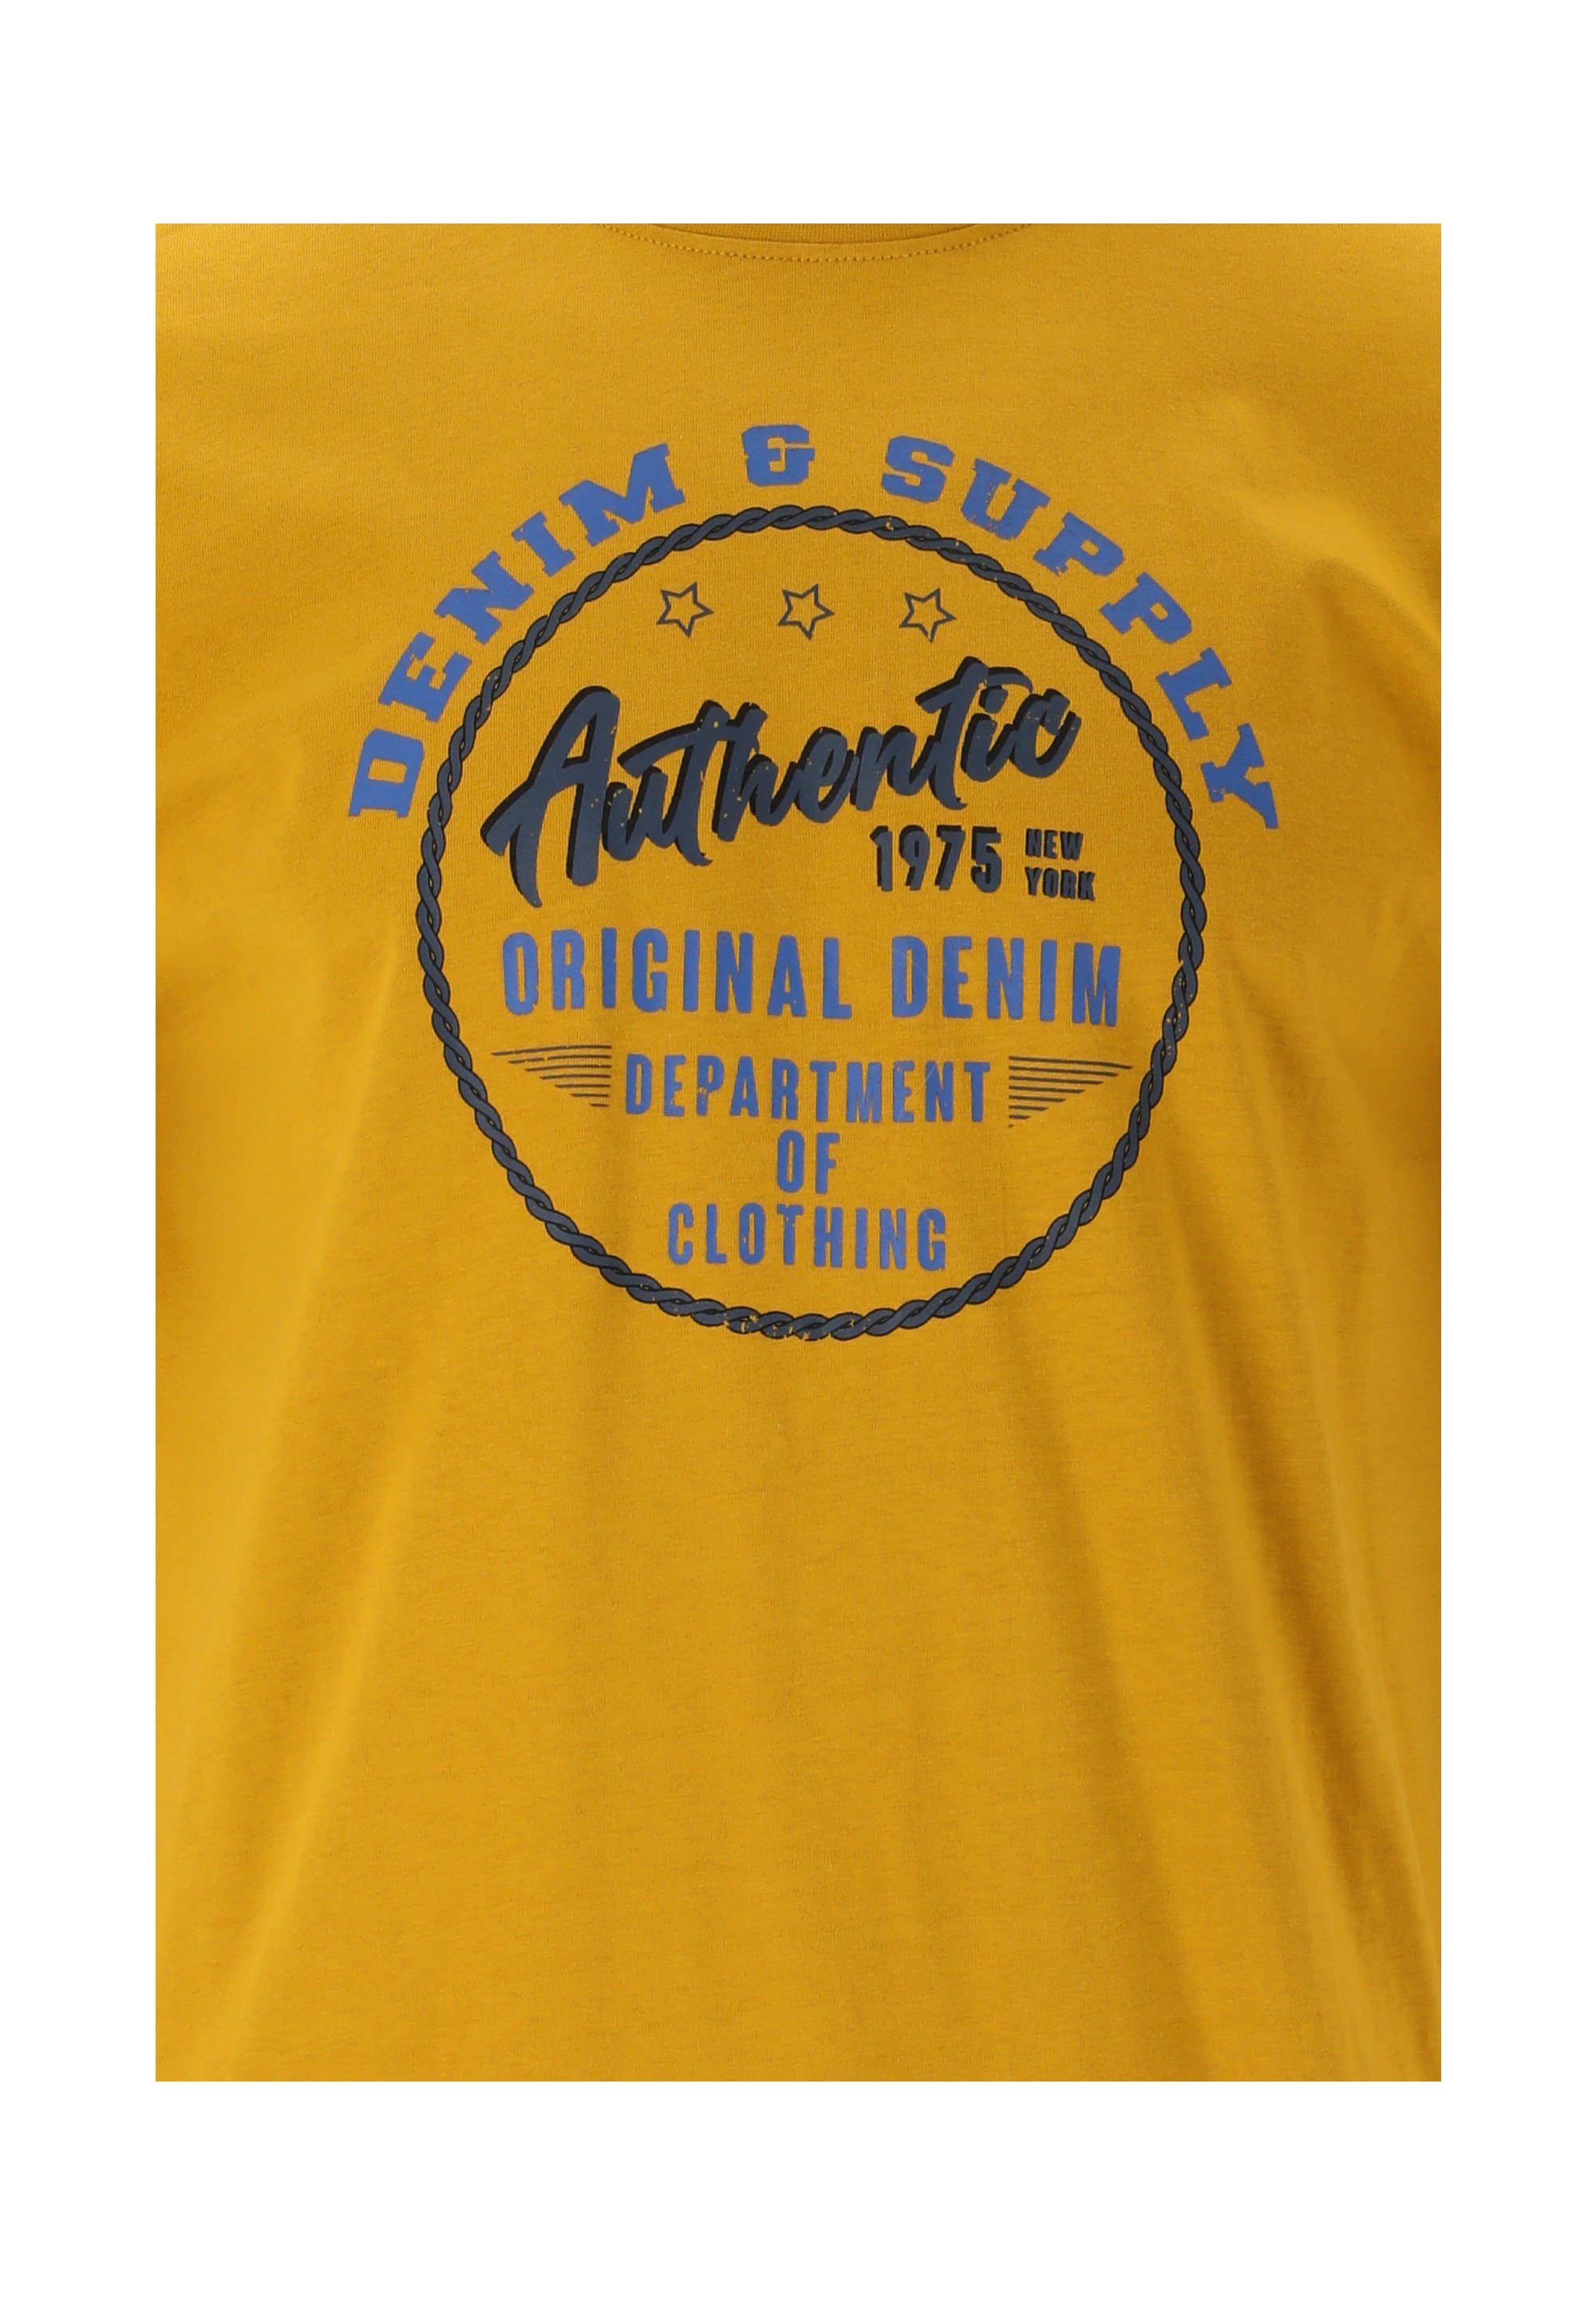 CRUZ T-Shirt Flemming mit stylischem Print gelb